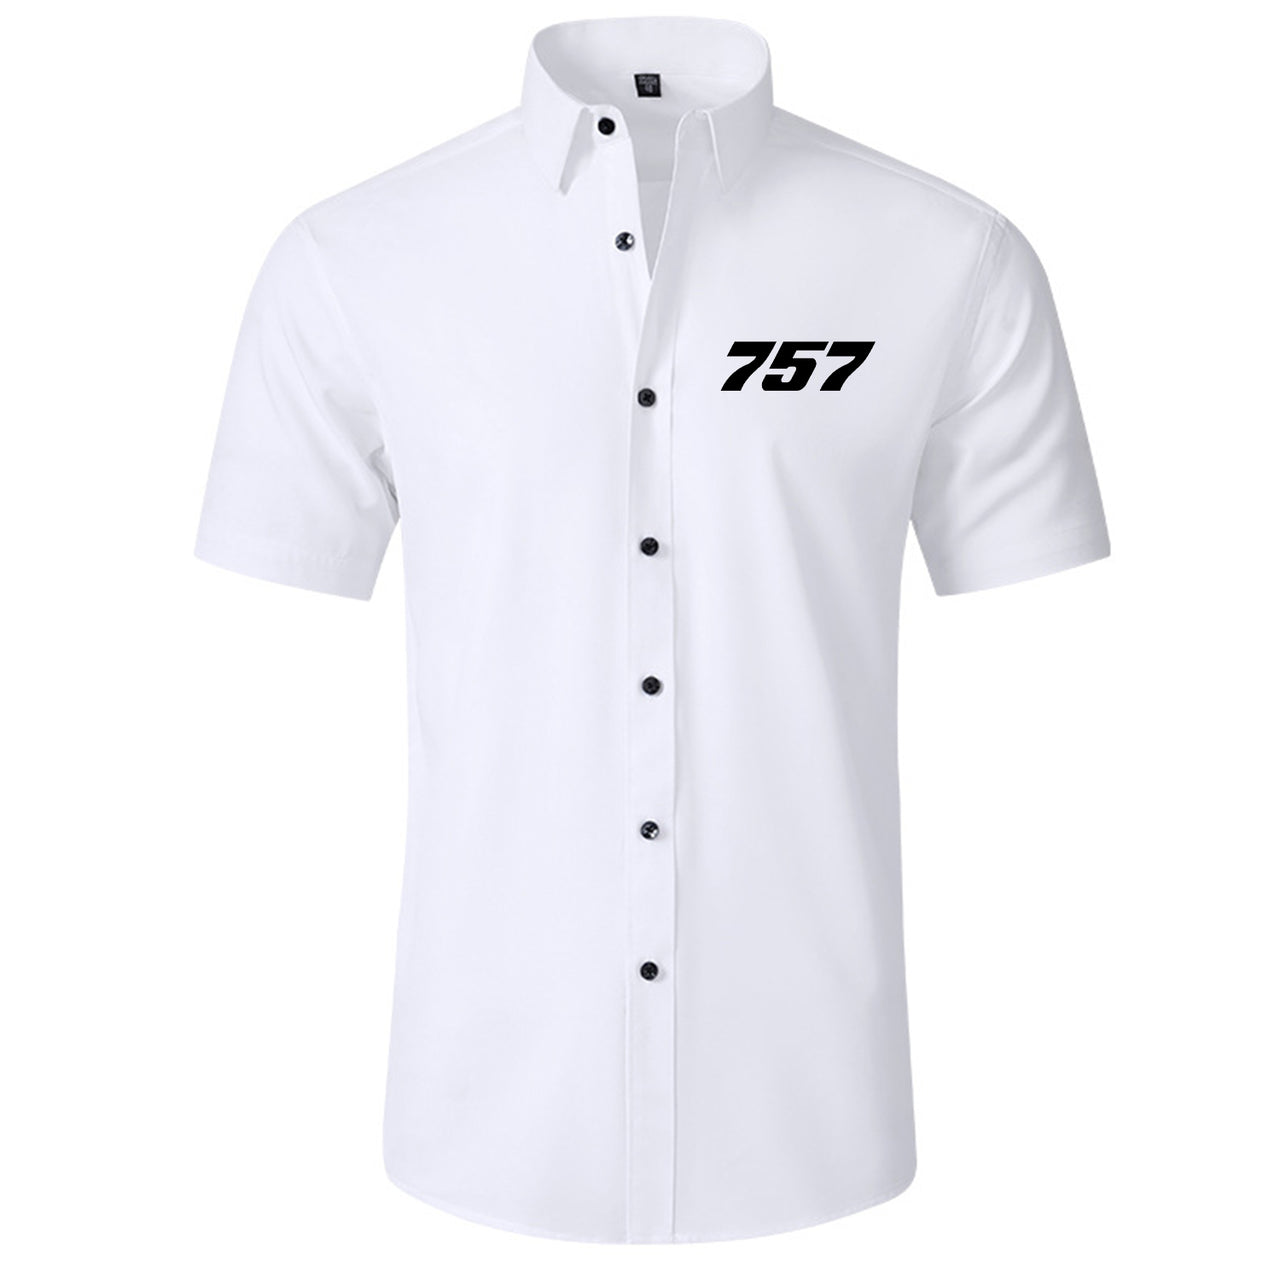 757 Flat Text Designed Short Sleeve Shirts